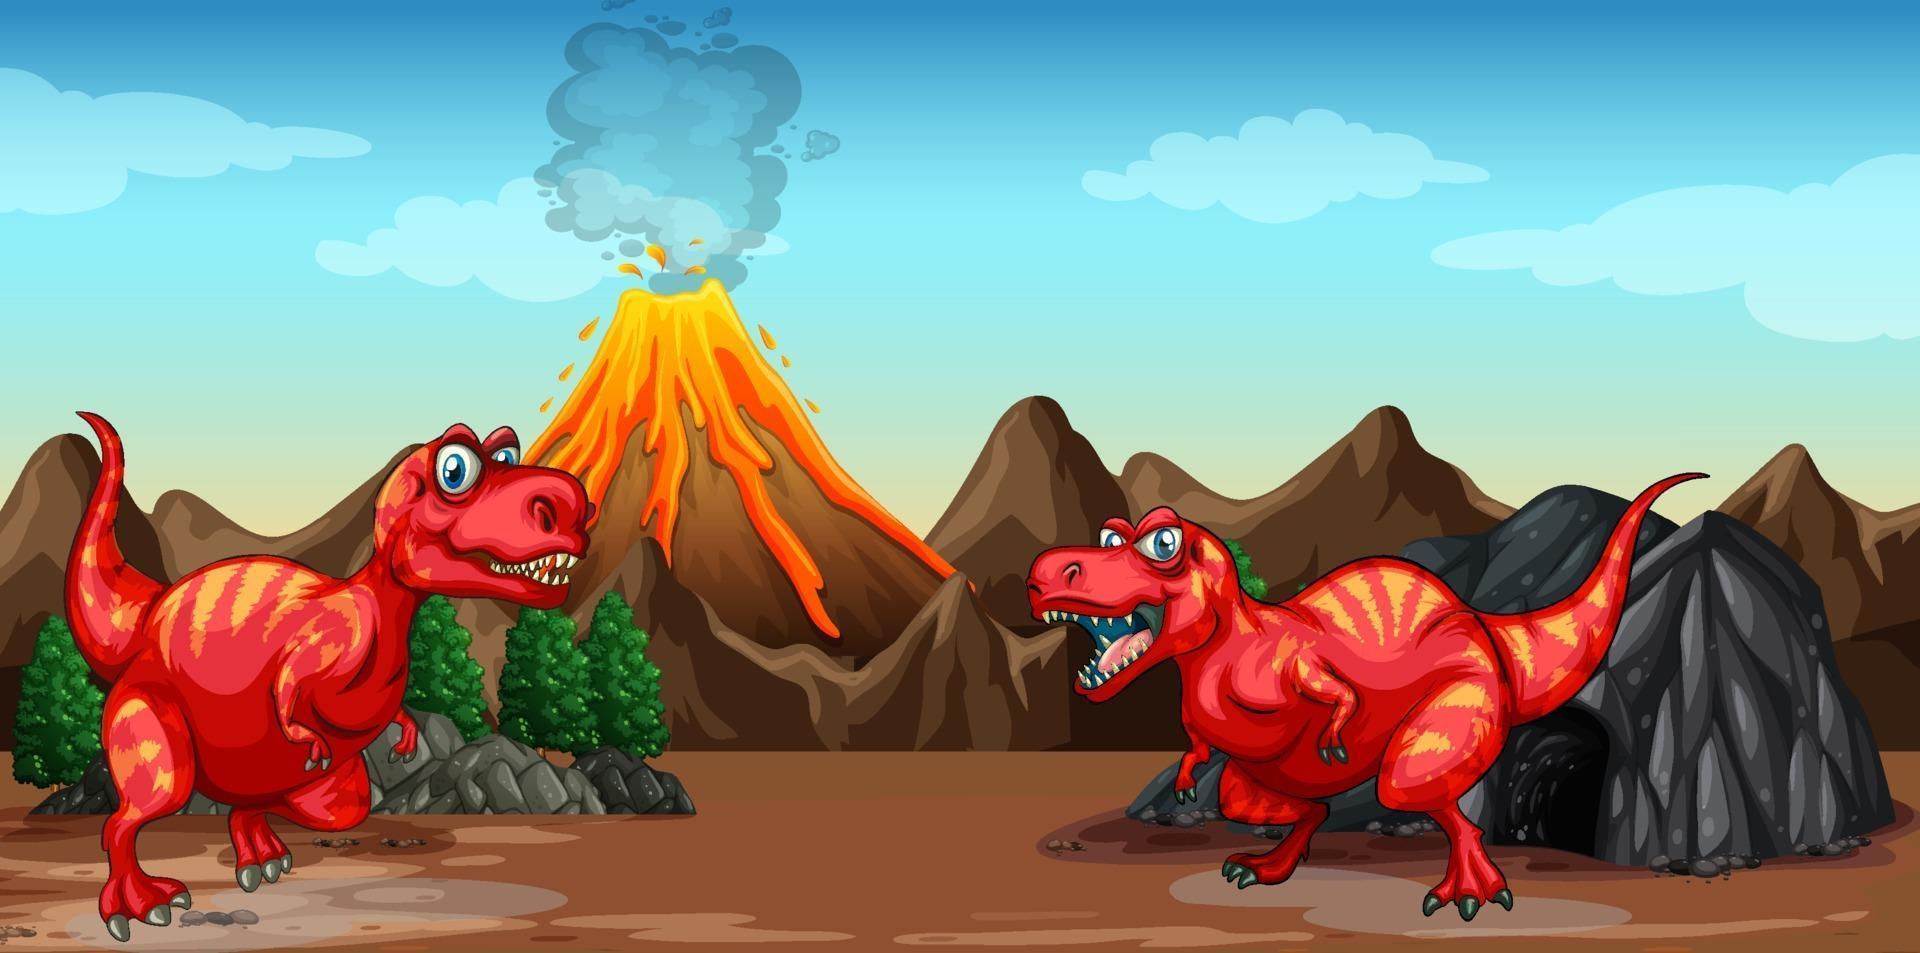 zwei Dinosaurier-Zeichentrickfigur in der Naturszene vektor